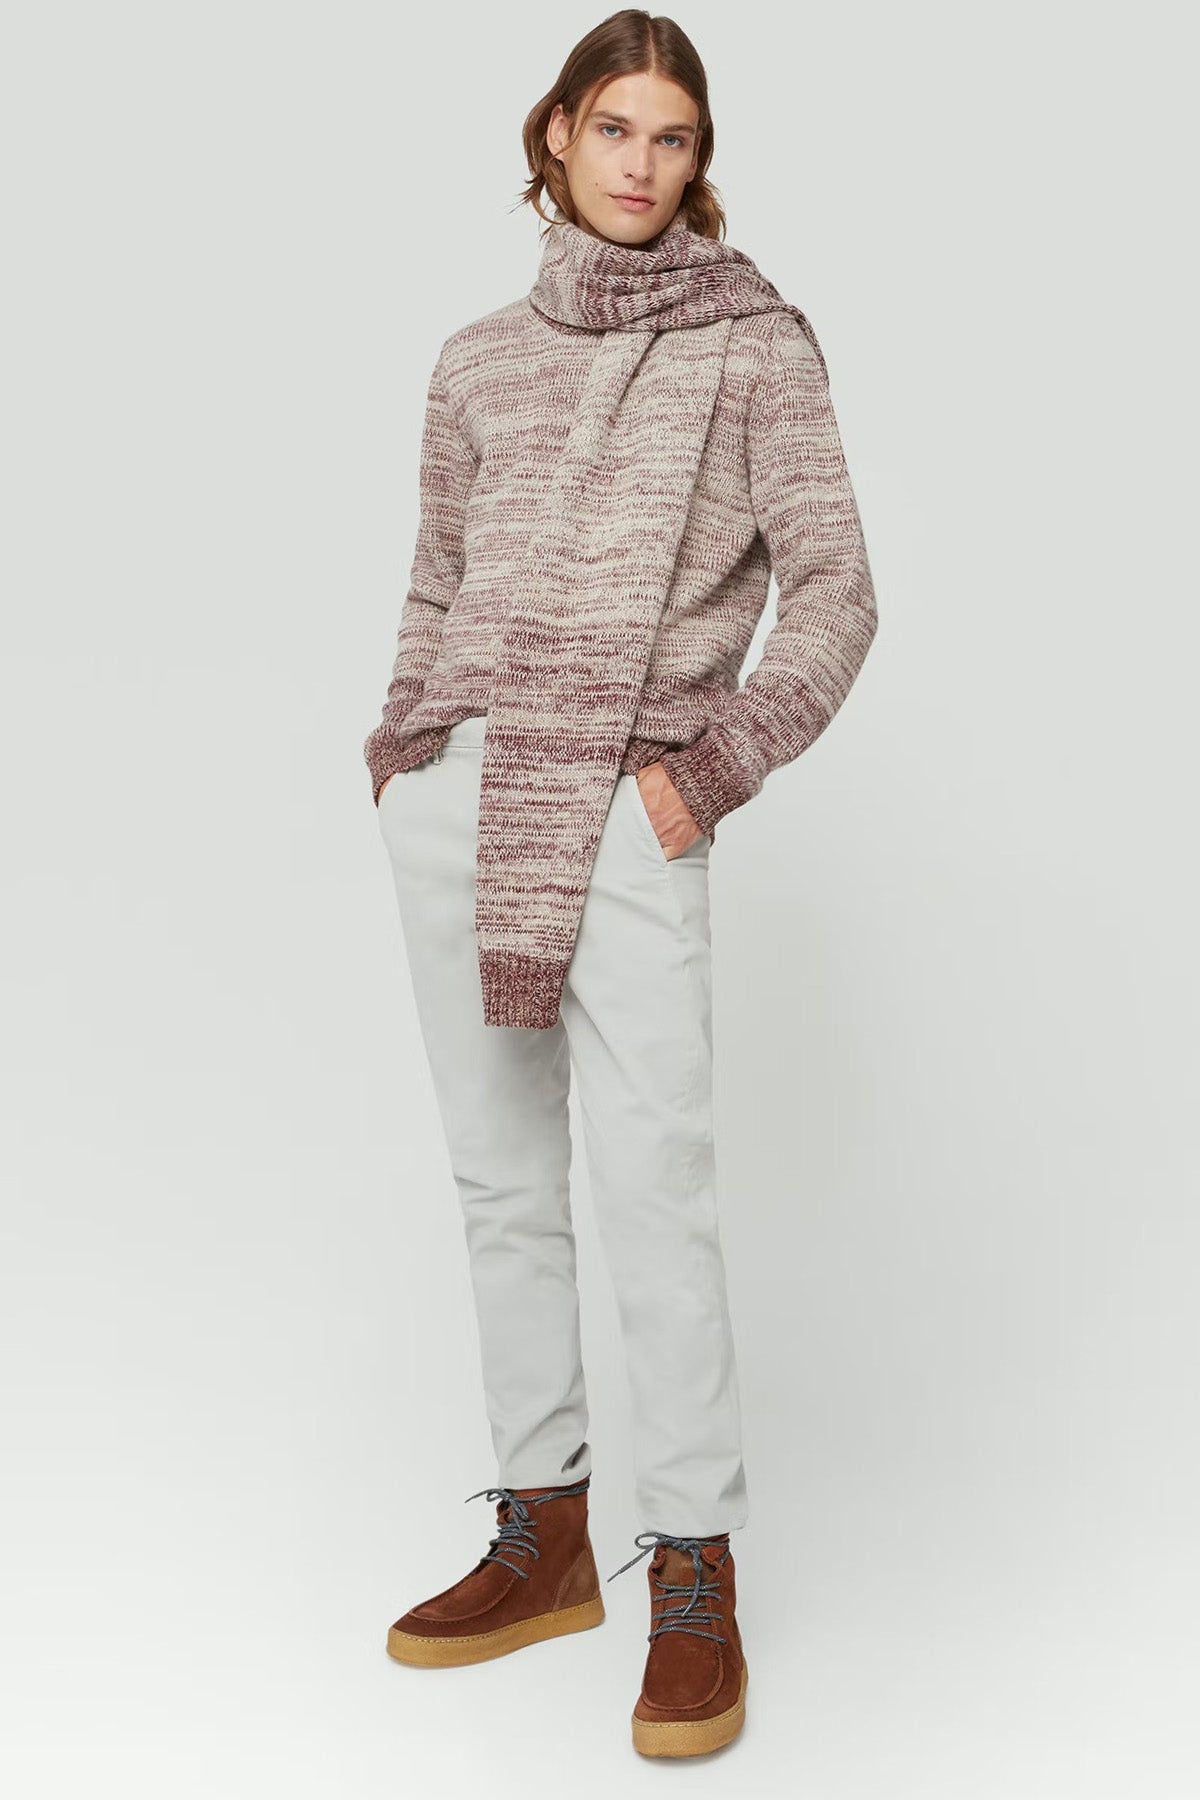 Dondup Slim Fit Yandan Cepli Tek Pile Streç Pantolon-Libas Trendy Fashion Store